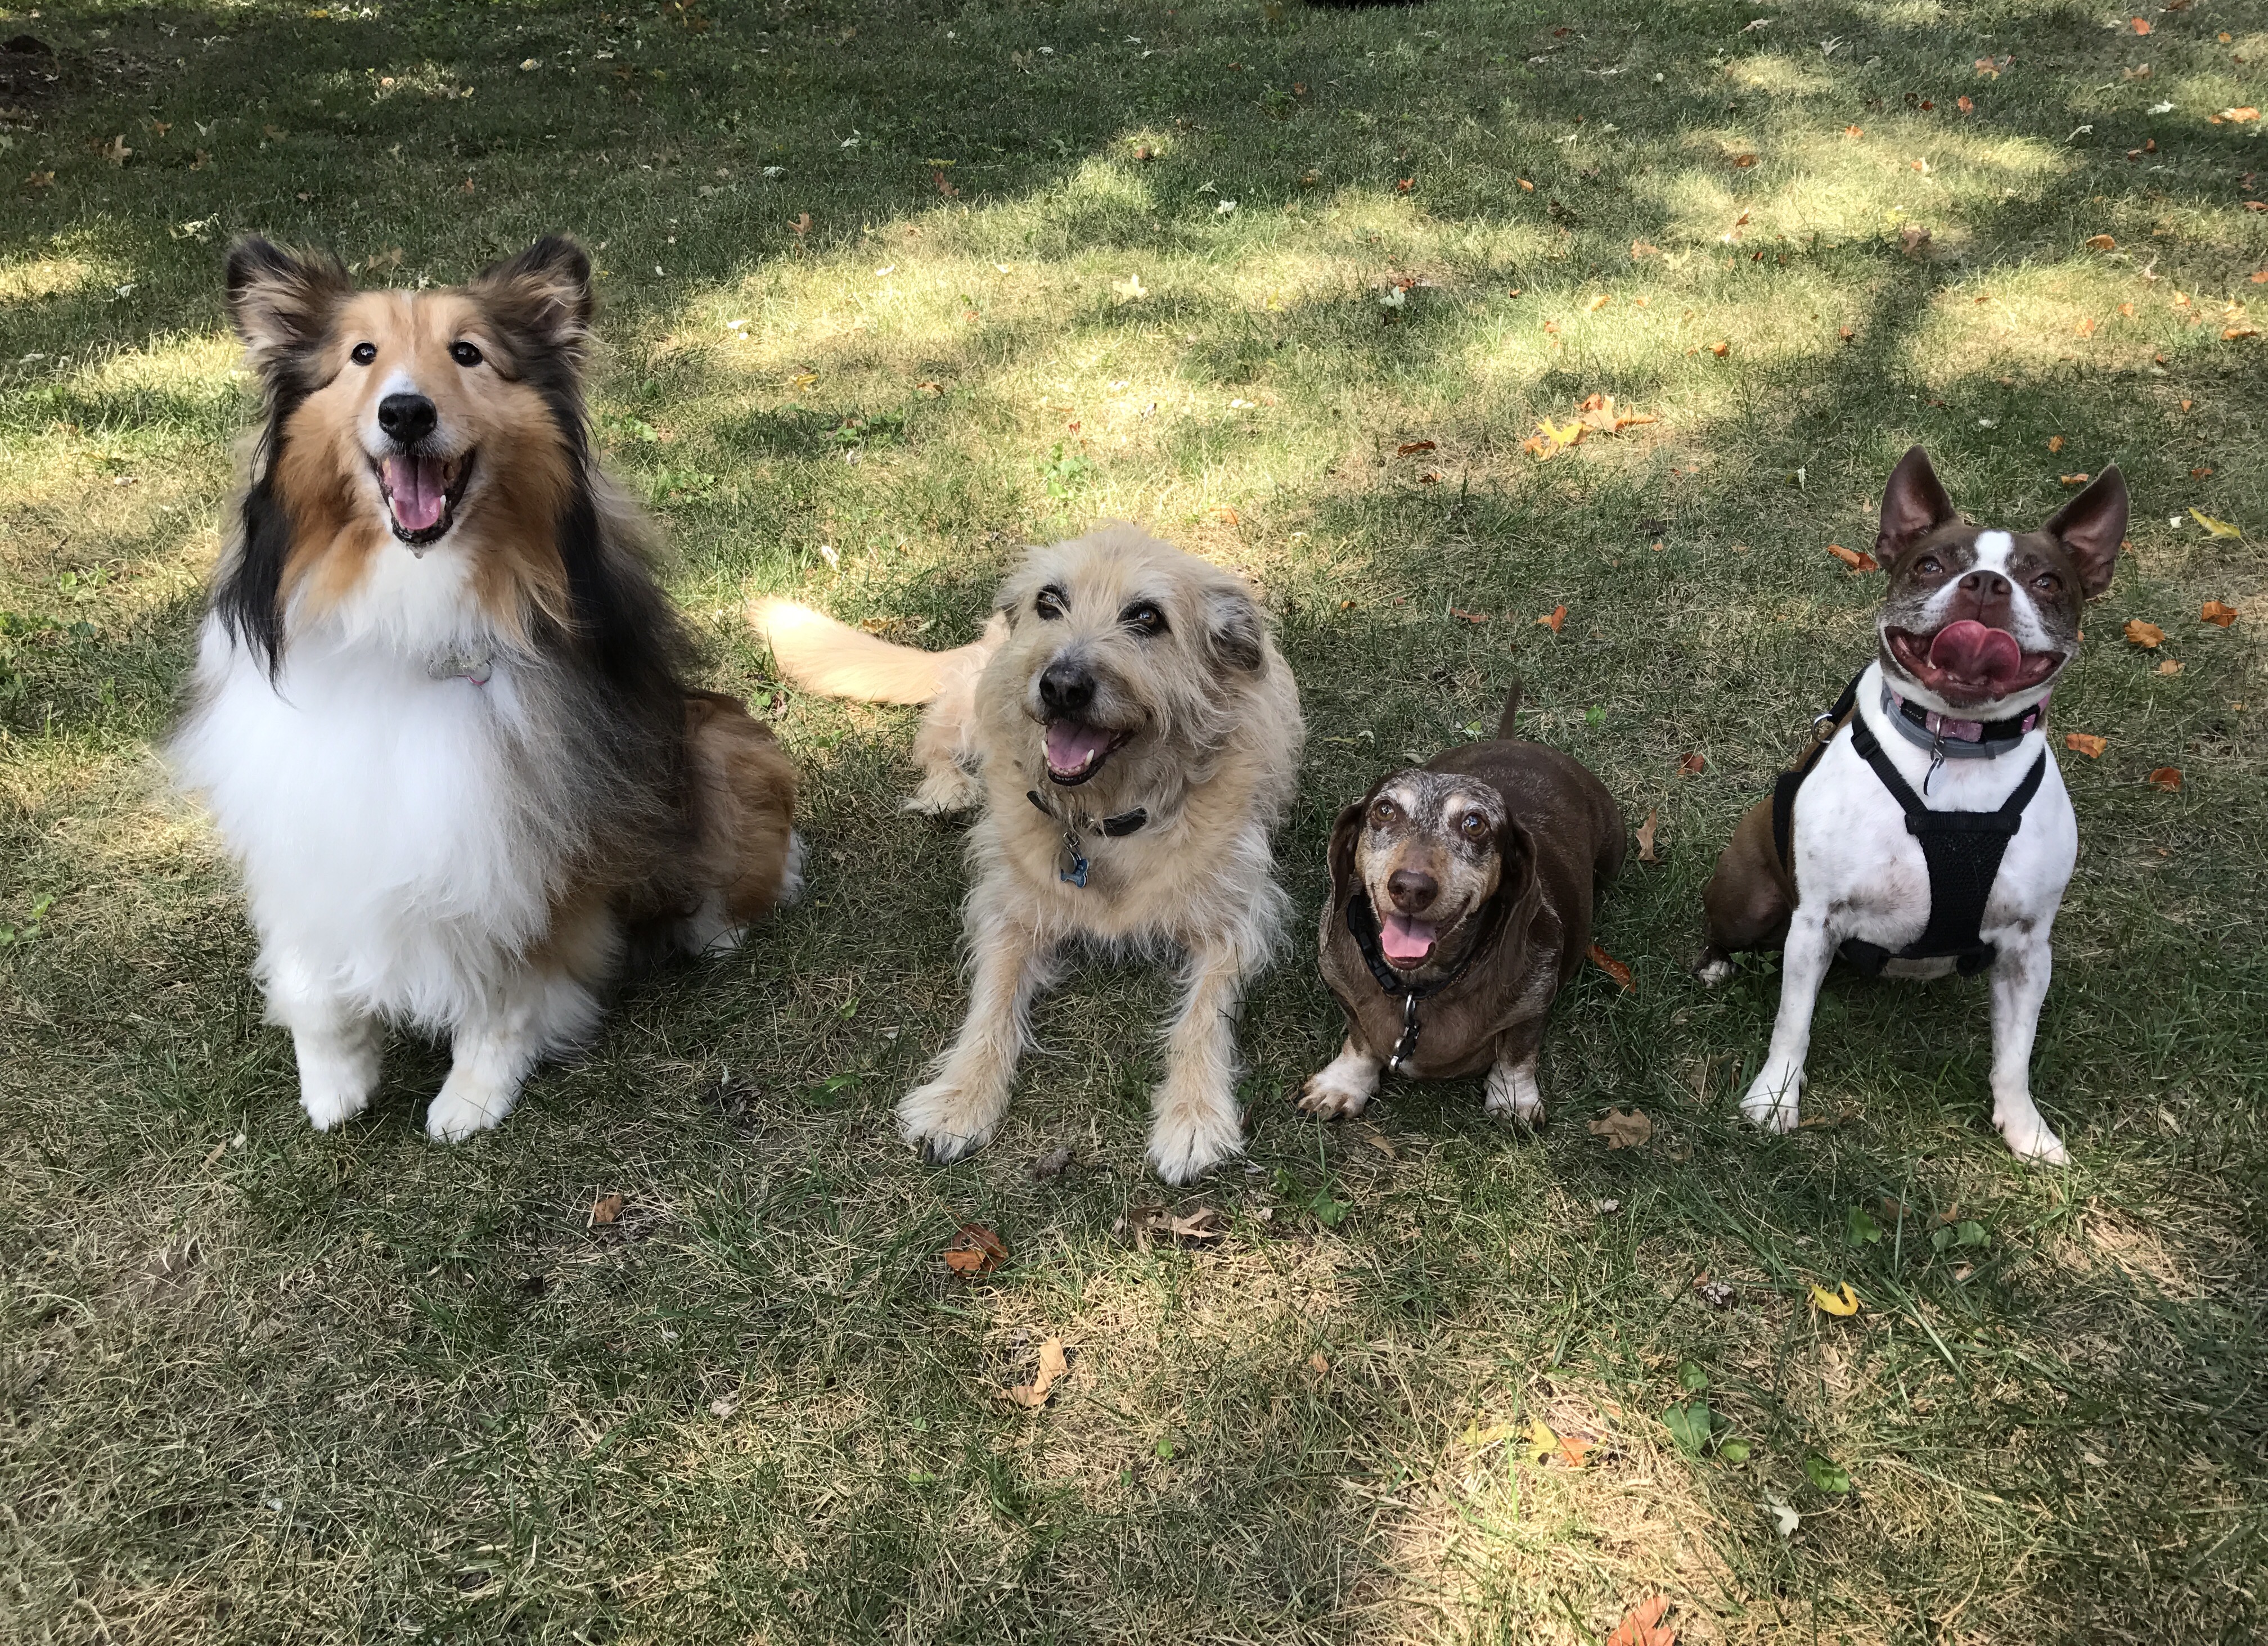 Senior aged Sheltie, Terrier, Daschund and Boston Terrier